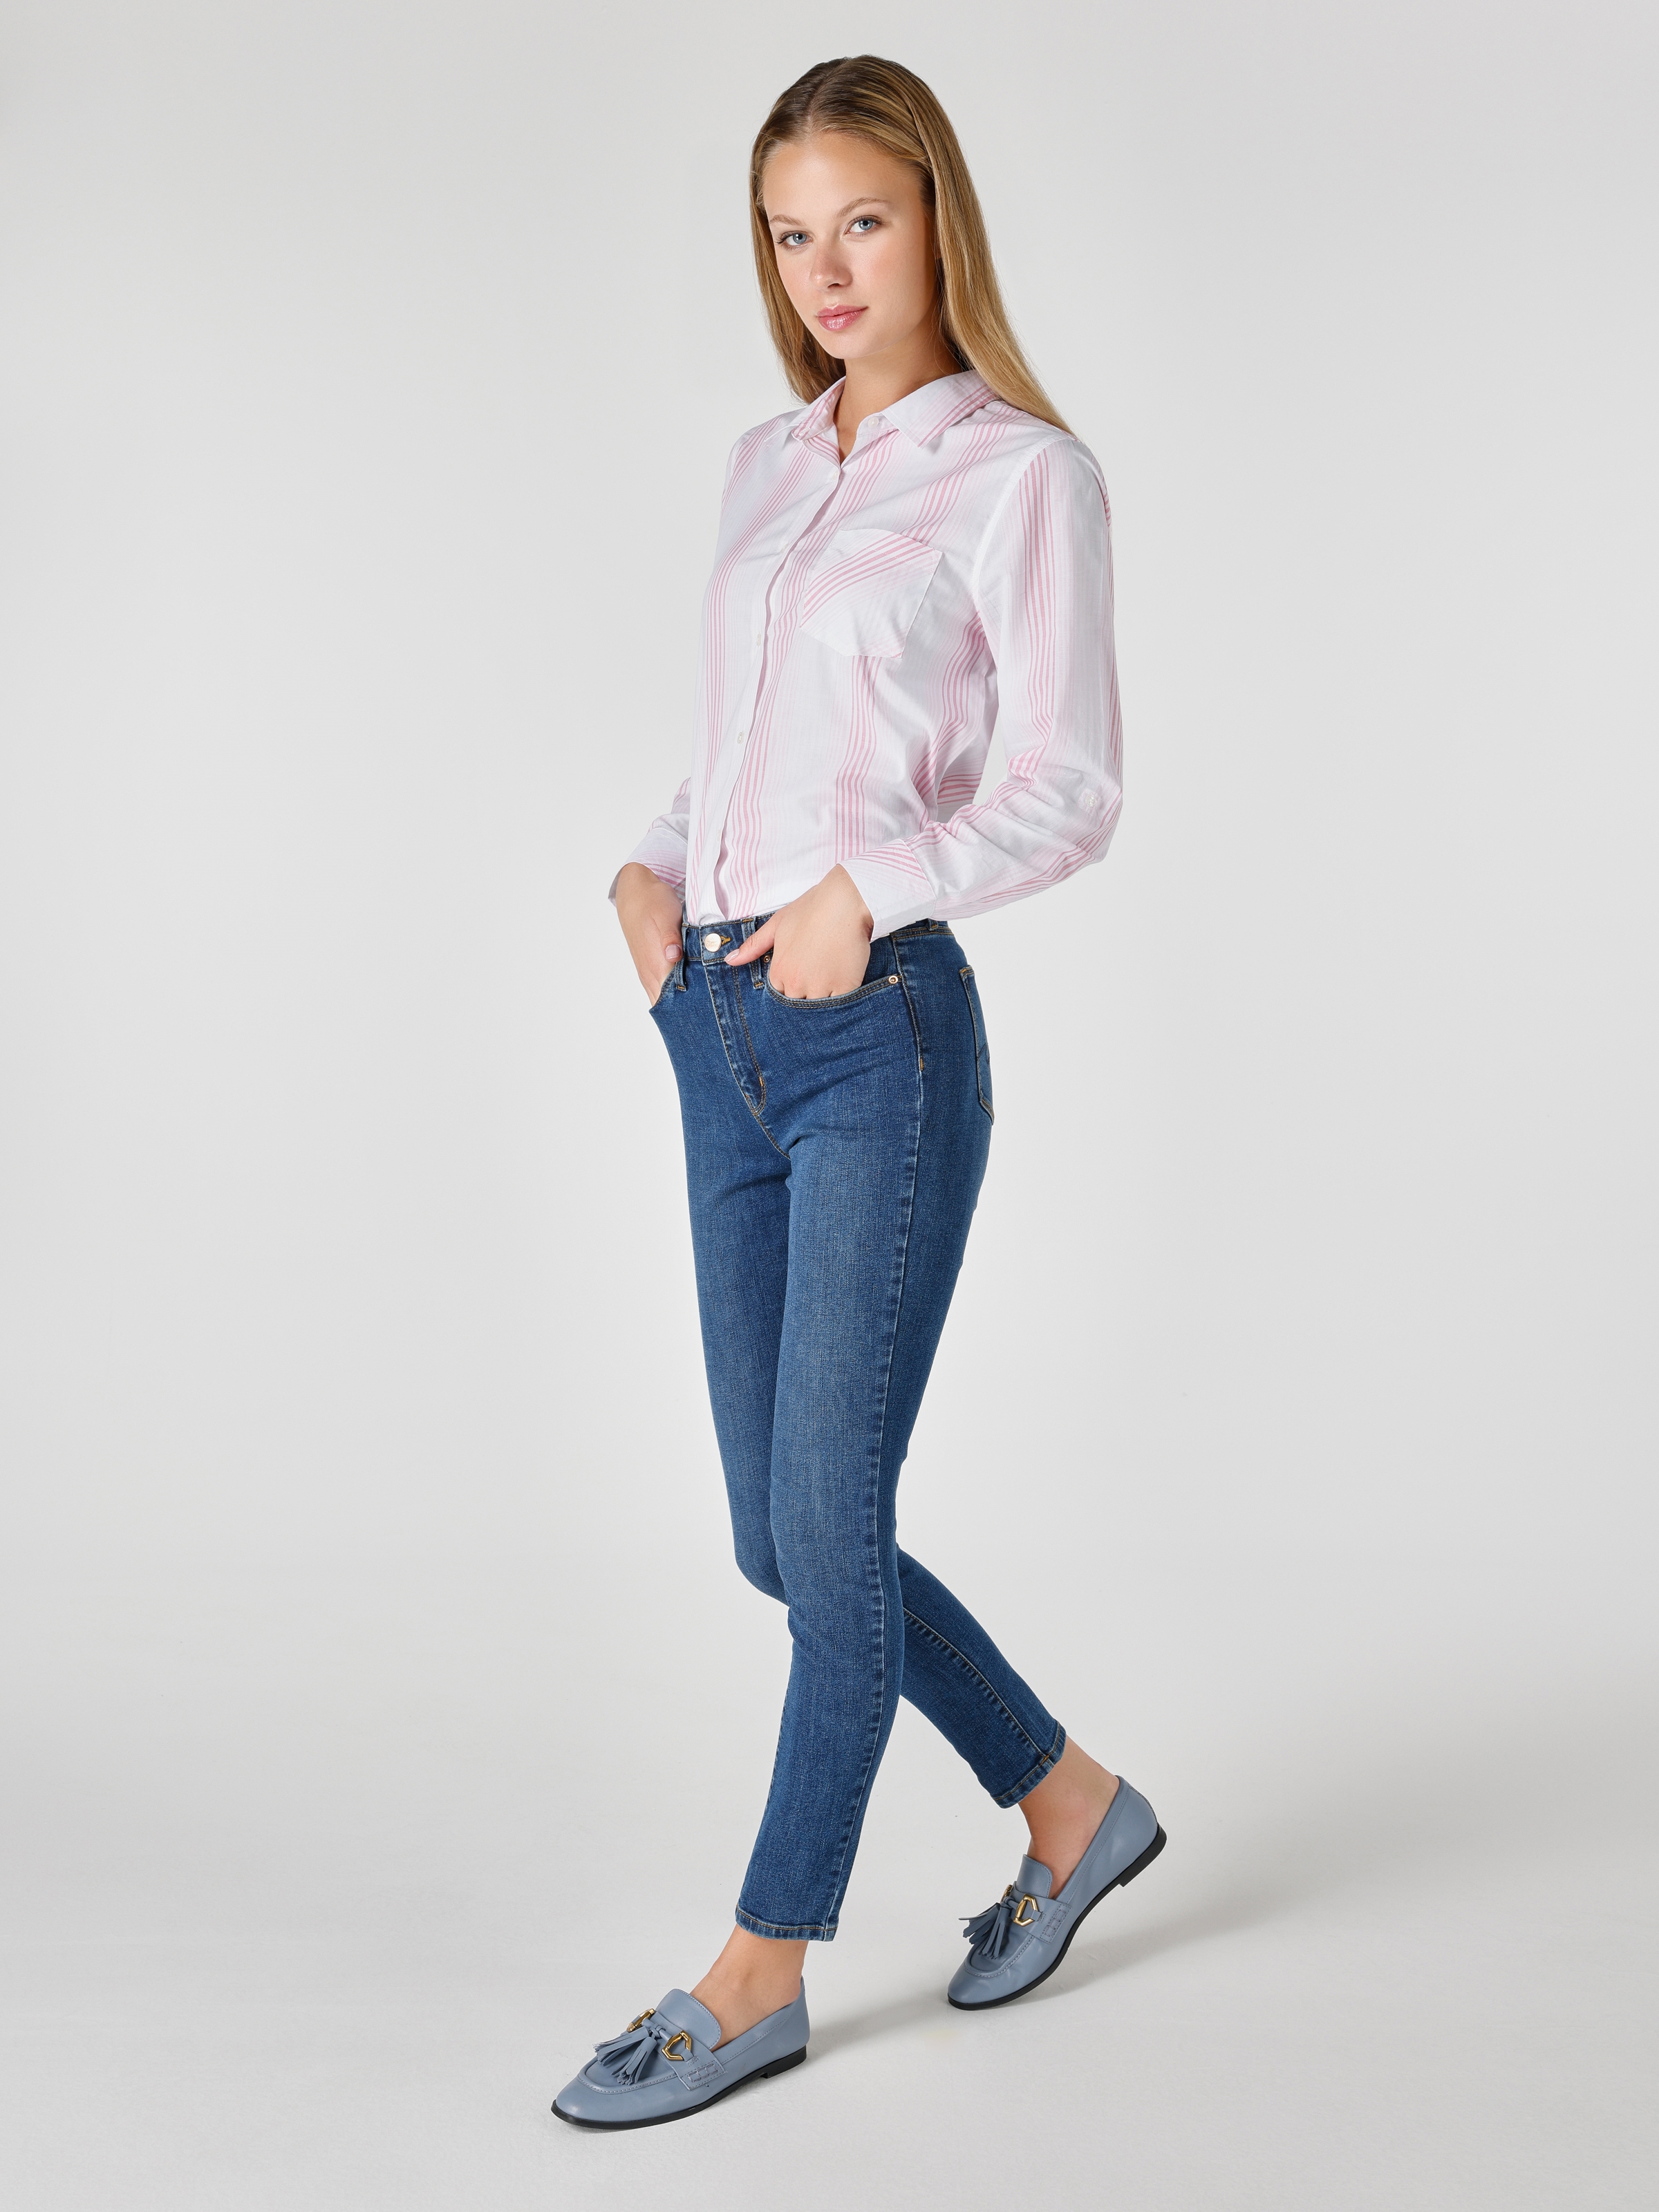 Afficher les détails de 759 Lara Pantalon En Jean Bleu Taille Moyenne À Jambe Étroite Et Coupe Super Slim Pour Femme